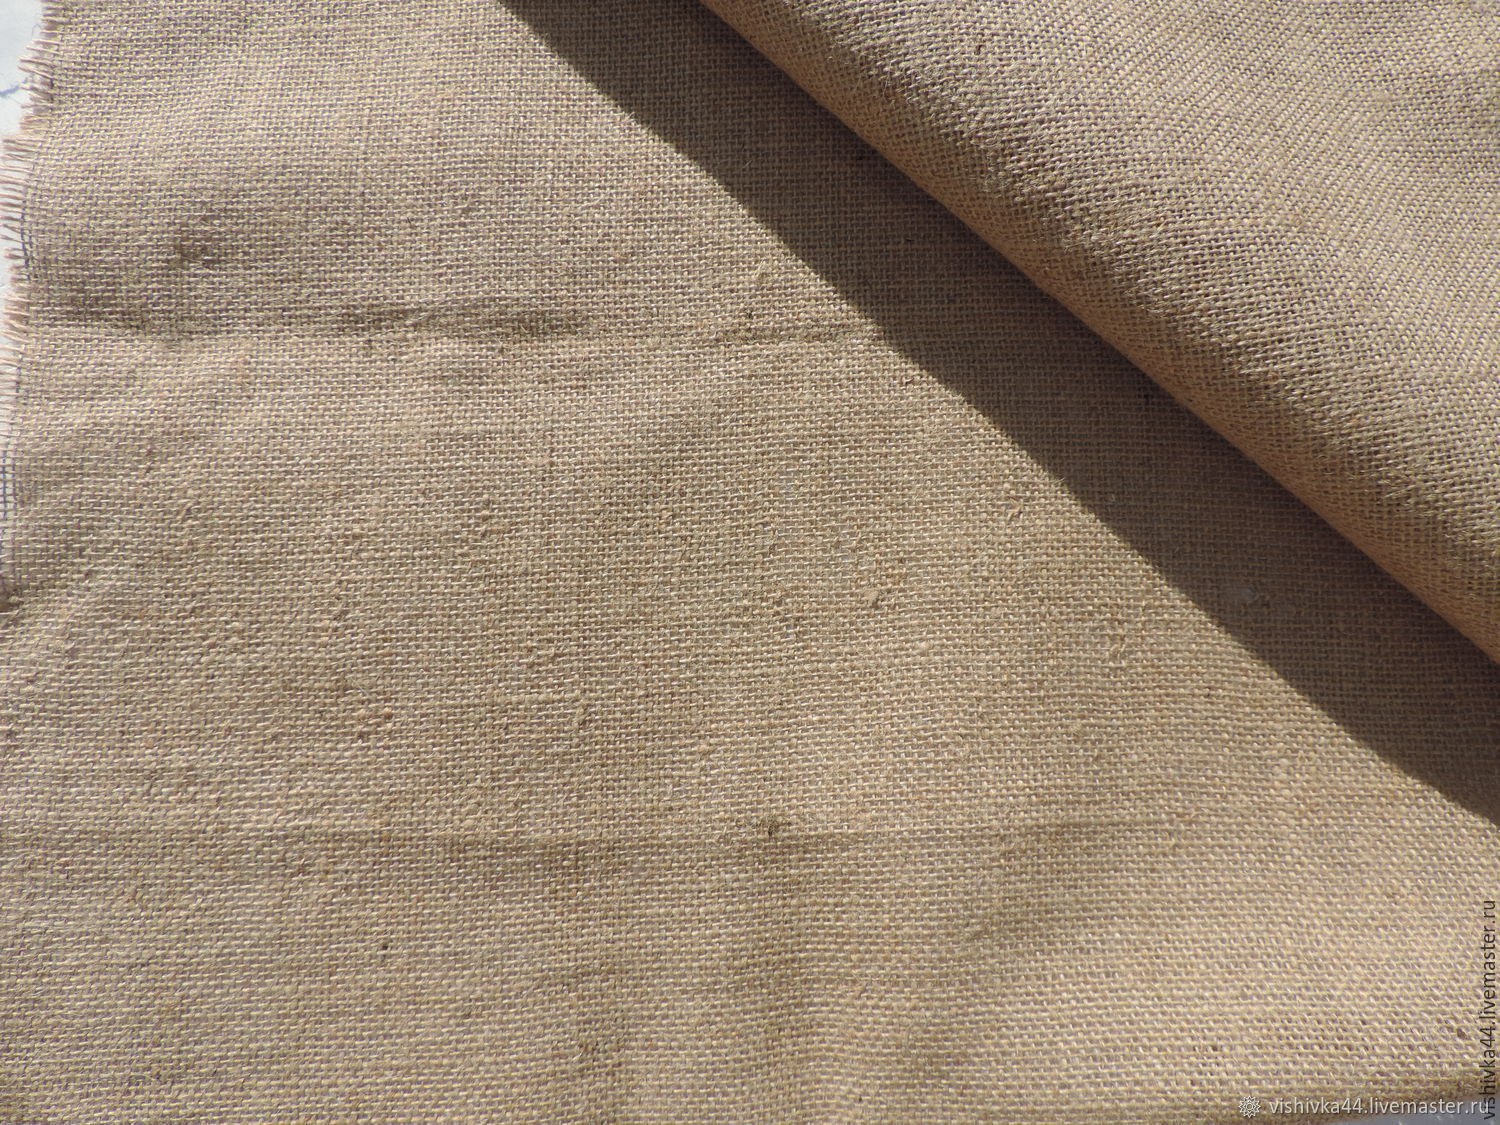 Х б лен. Ткань лён Агава. Натуральная льняная ткань. Ткань льняная техническая. Мешковина ткань.